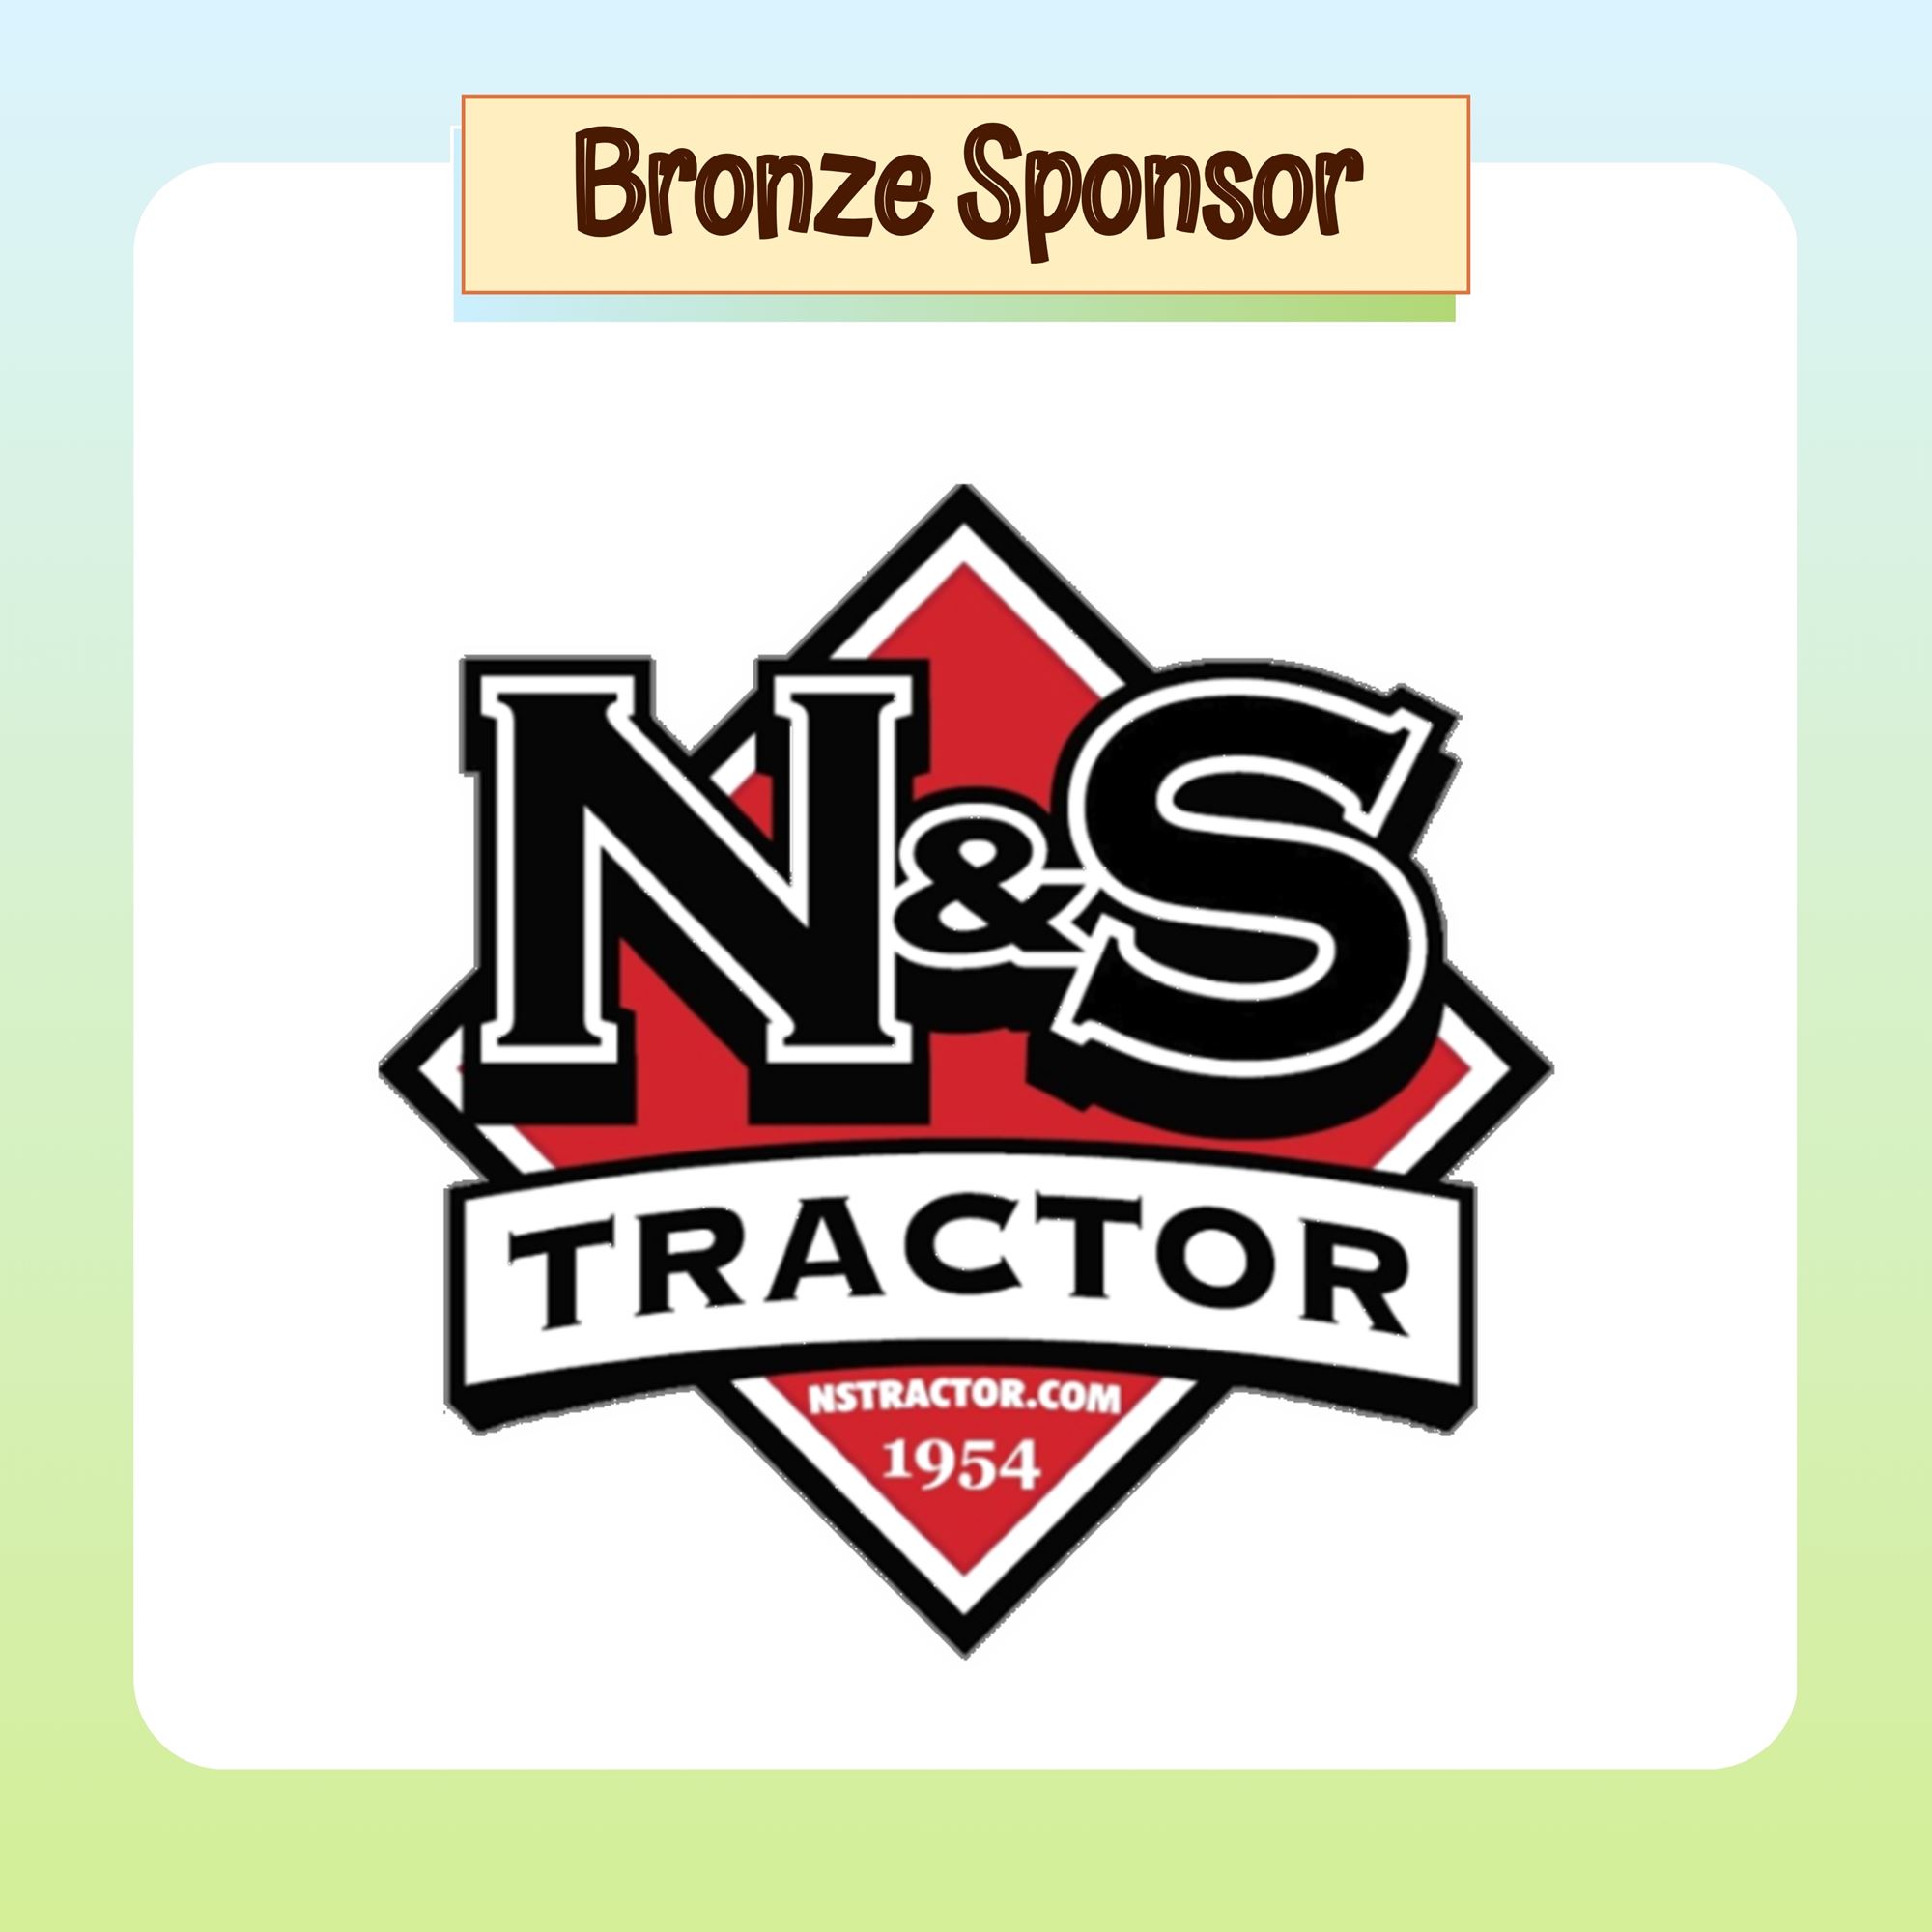 Bronze Sponsor: N&S Tractor